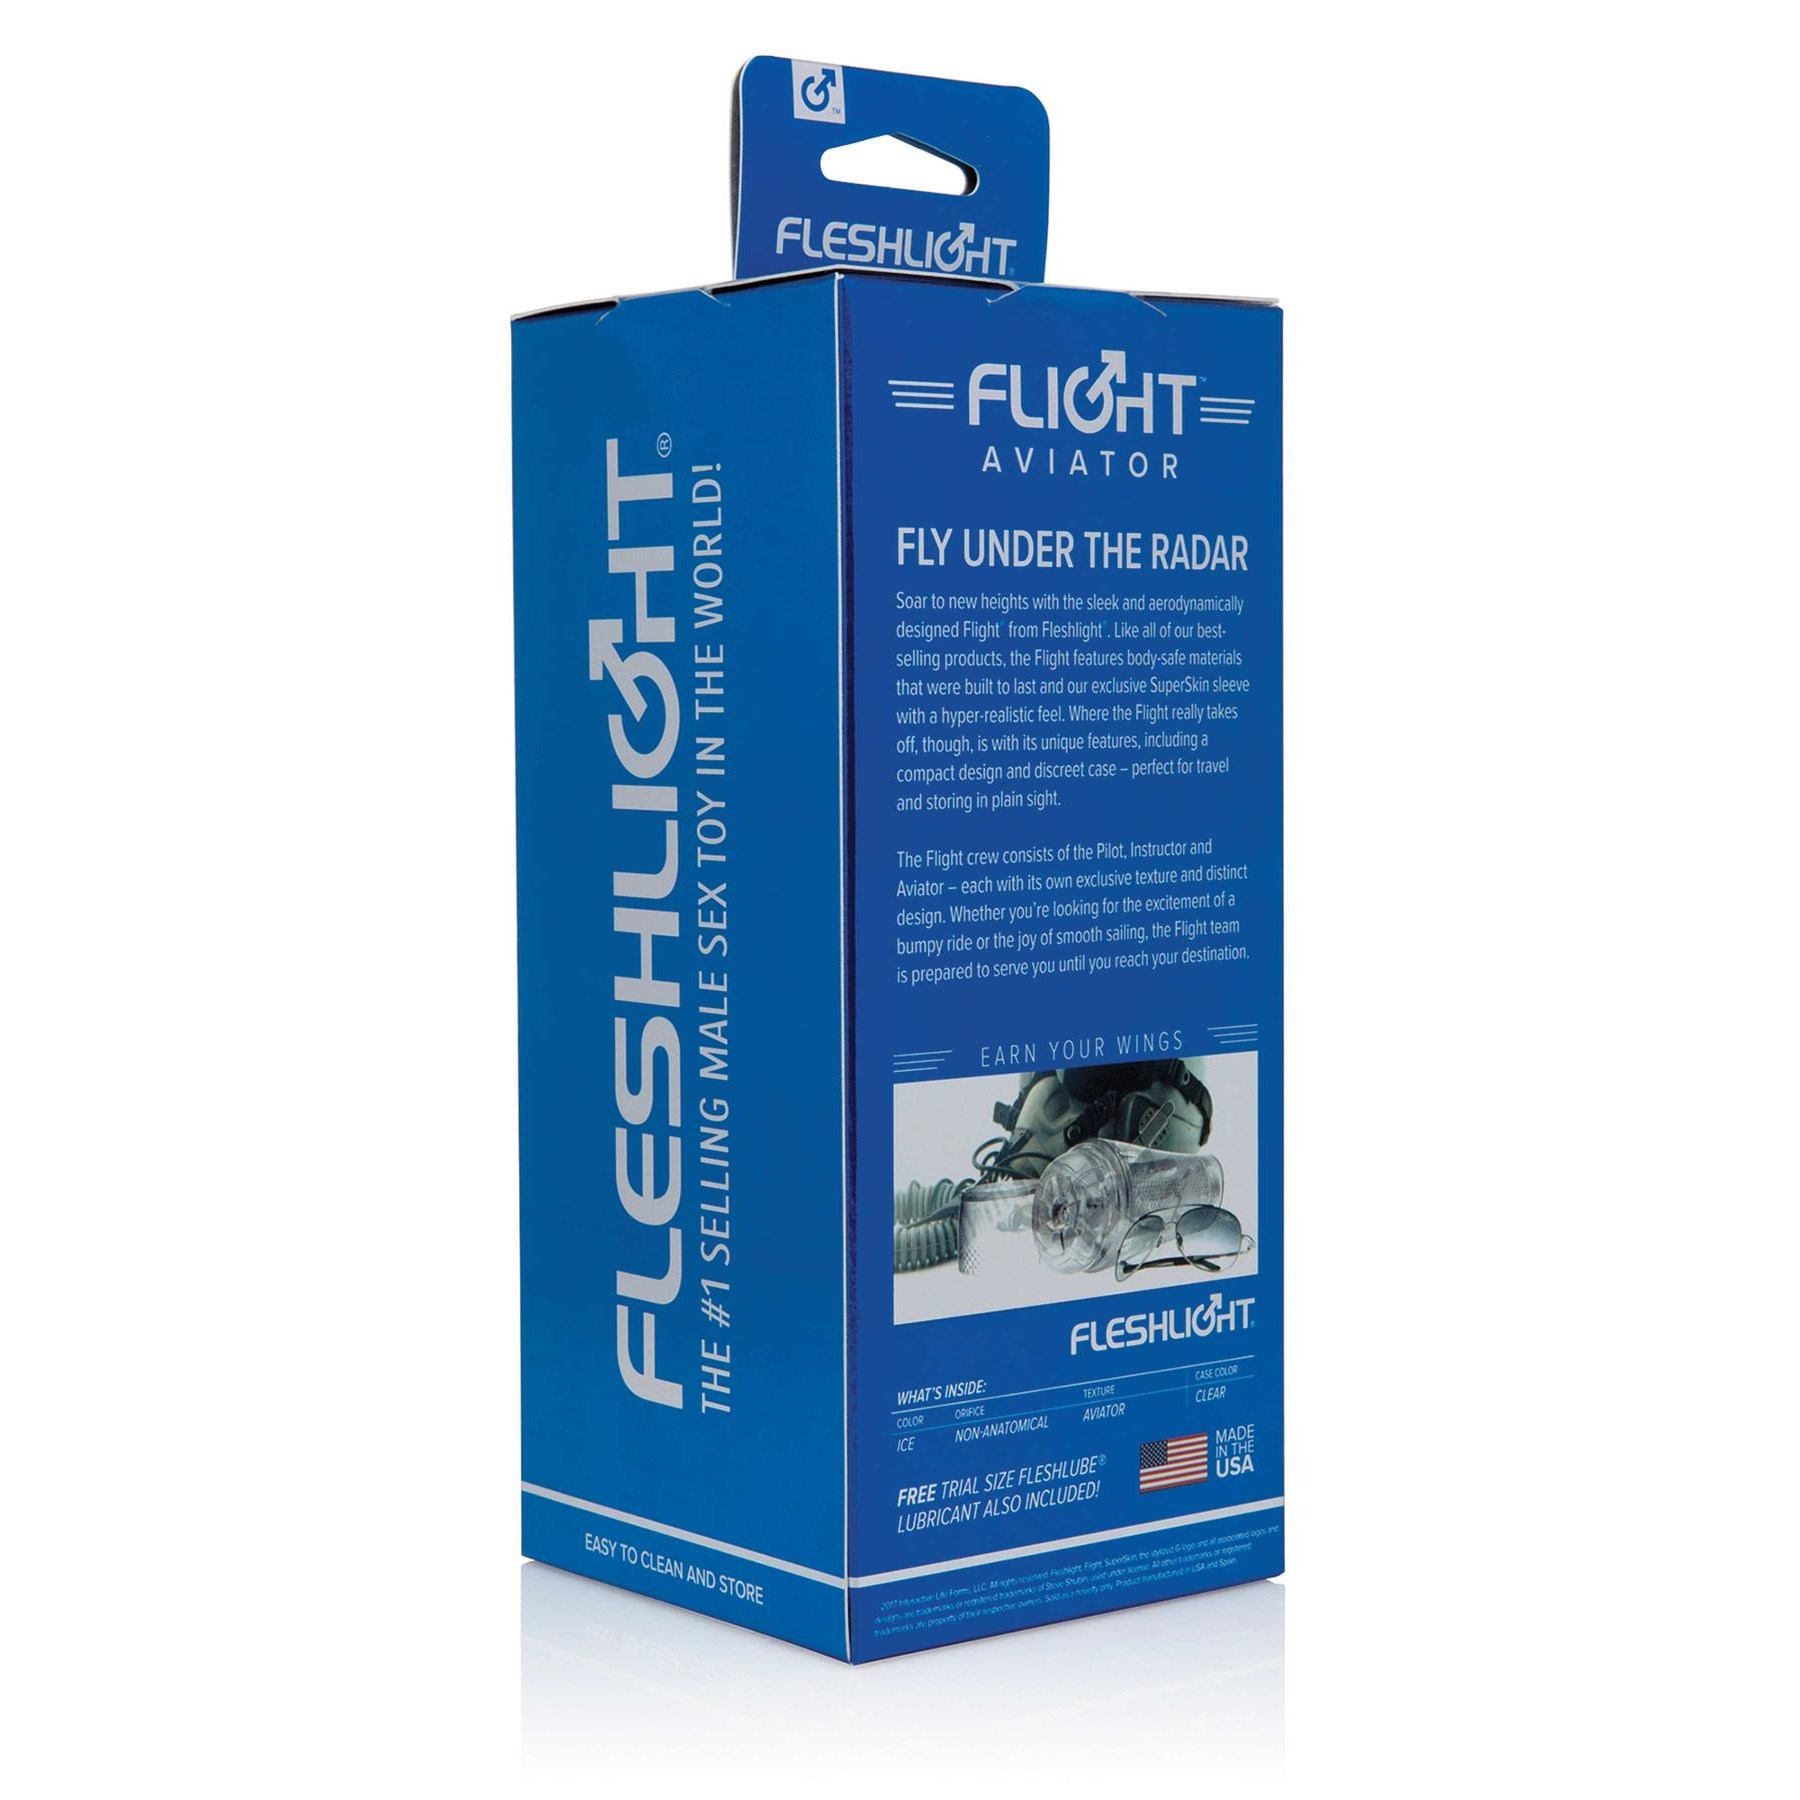 Fleshlight Flight Aviator male masturbator packaging